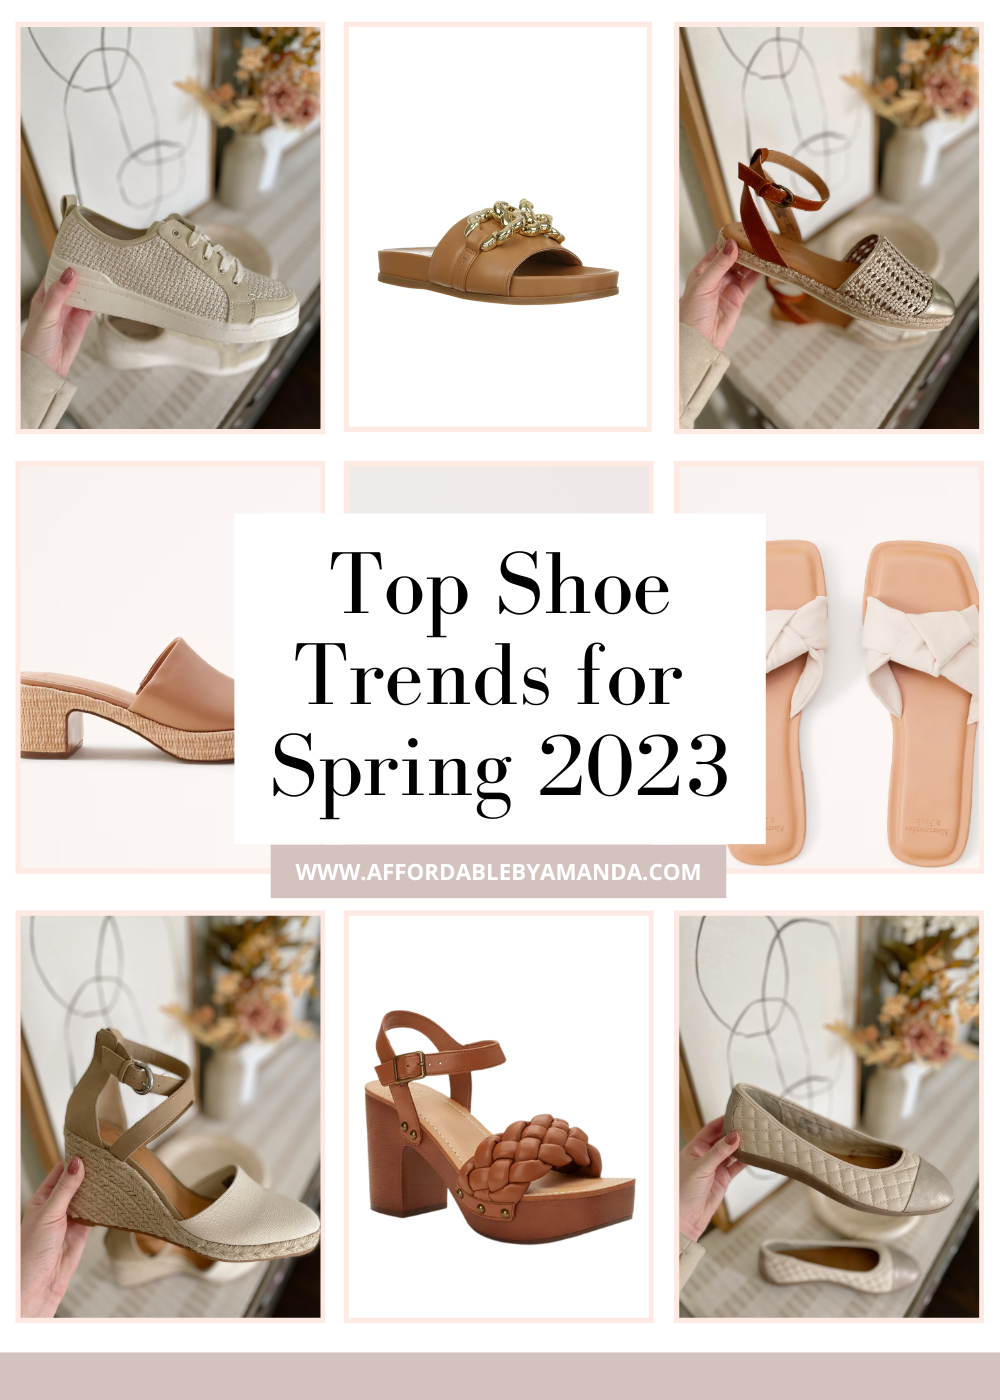 https://affordablebyamanda.com/wp-content/uploads/2023/01/top-shoe-trends-for-2023.png